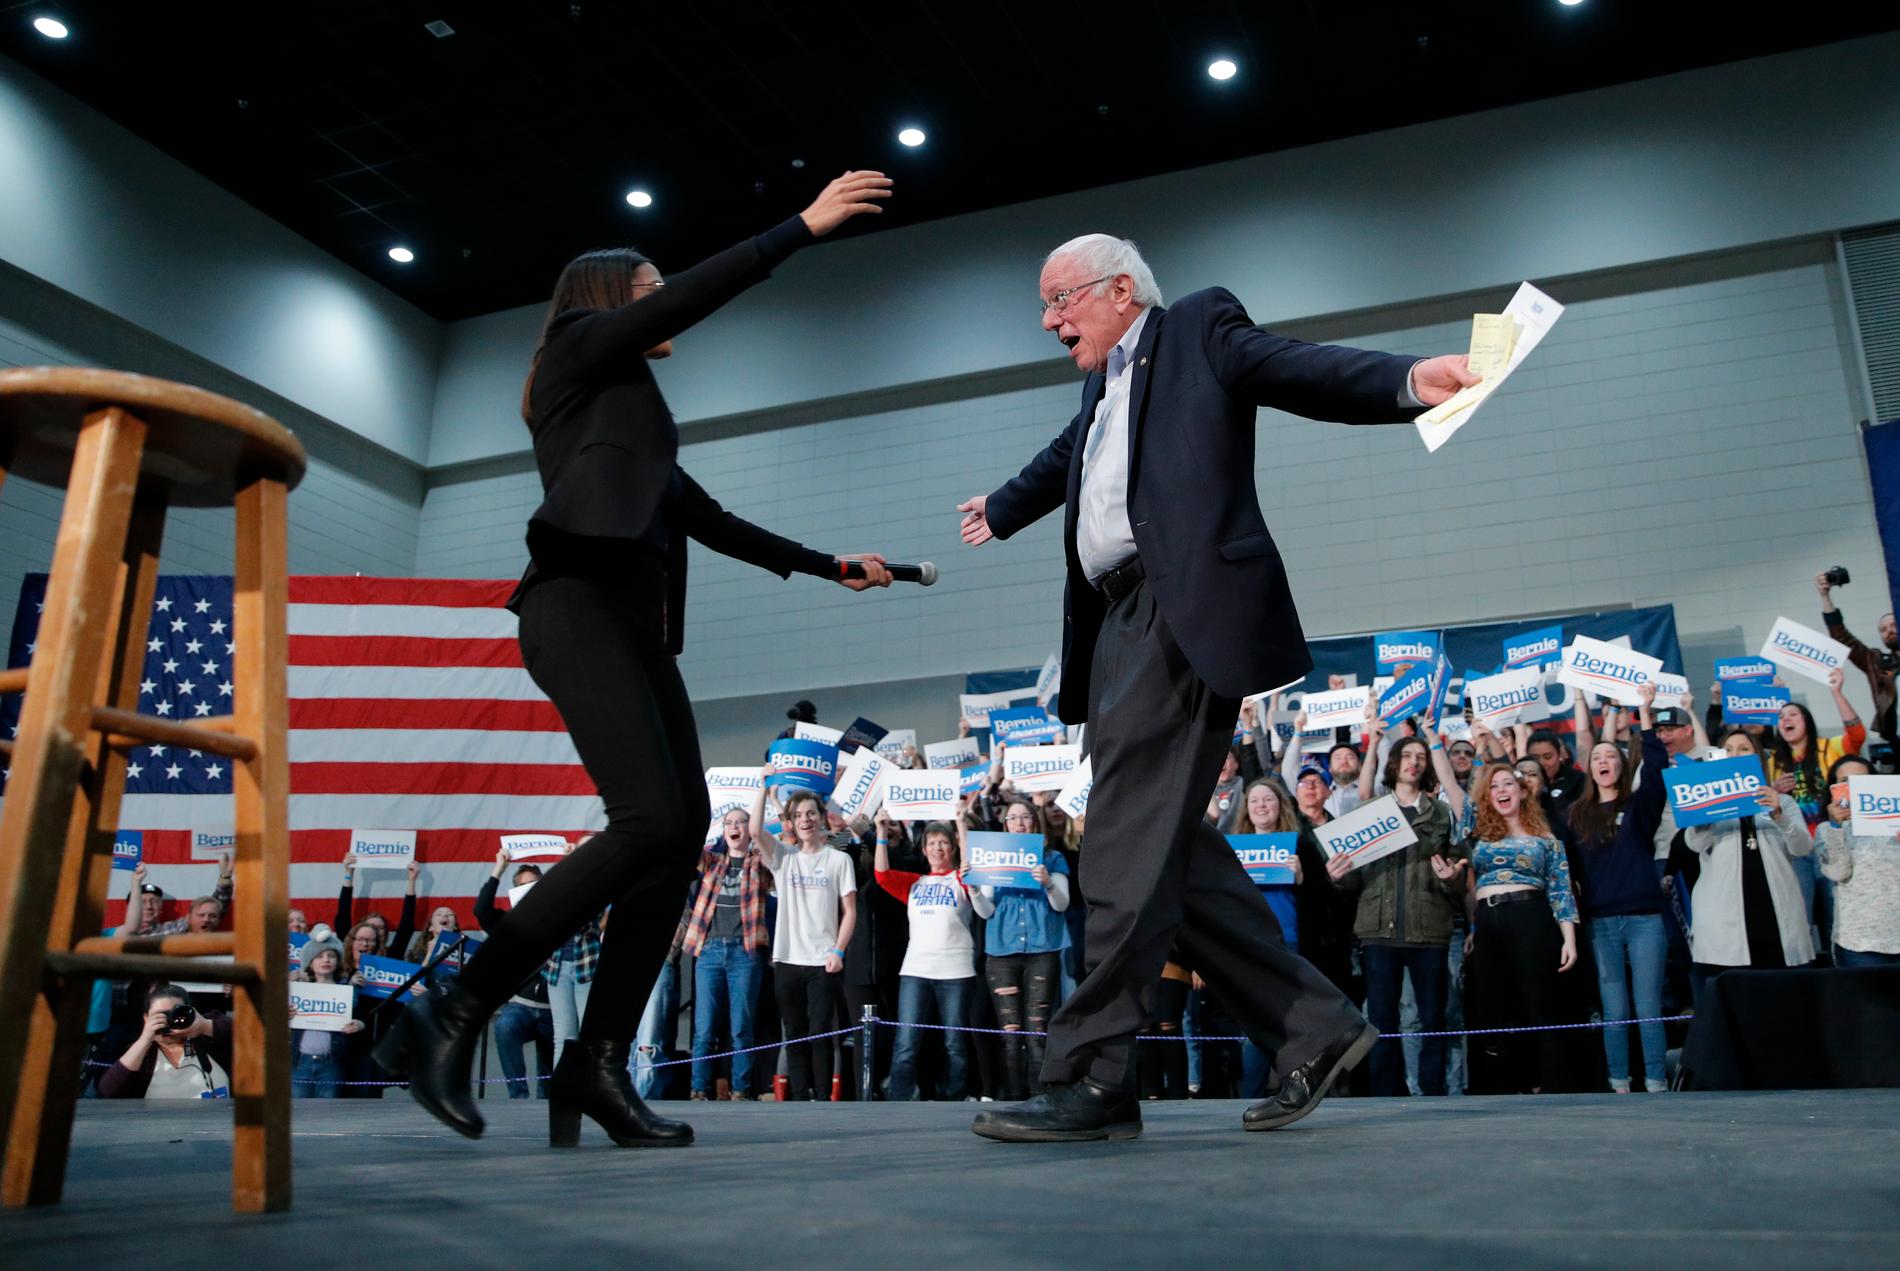 Presidentaspiranten och Vermontsenatorn Bernie Sanders välkomnas upp på scenen av den unga kongressledamoten Alexandria Ocasio-Cortez, som kampanjar för honom. Bilden är tagen i Sioux City i Iowa.